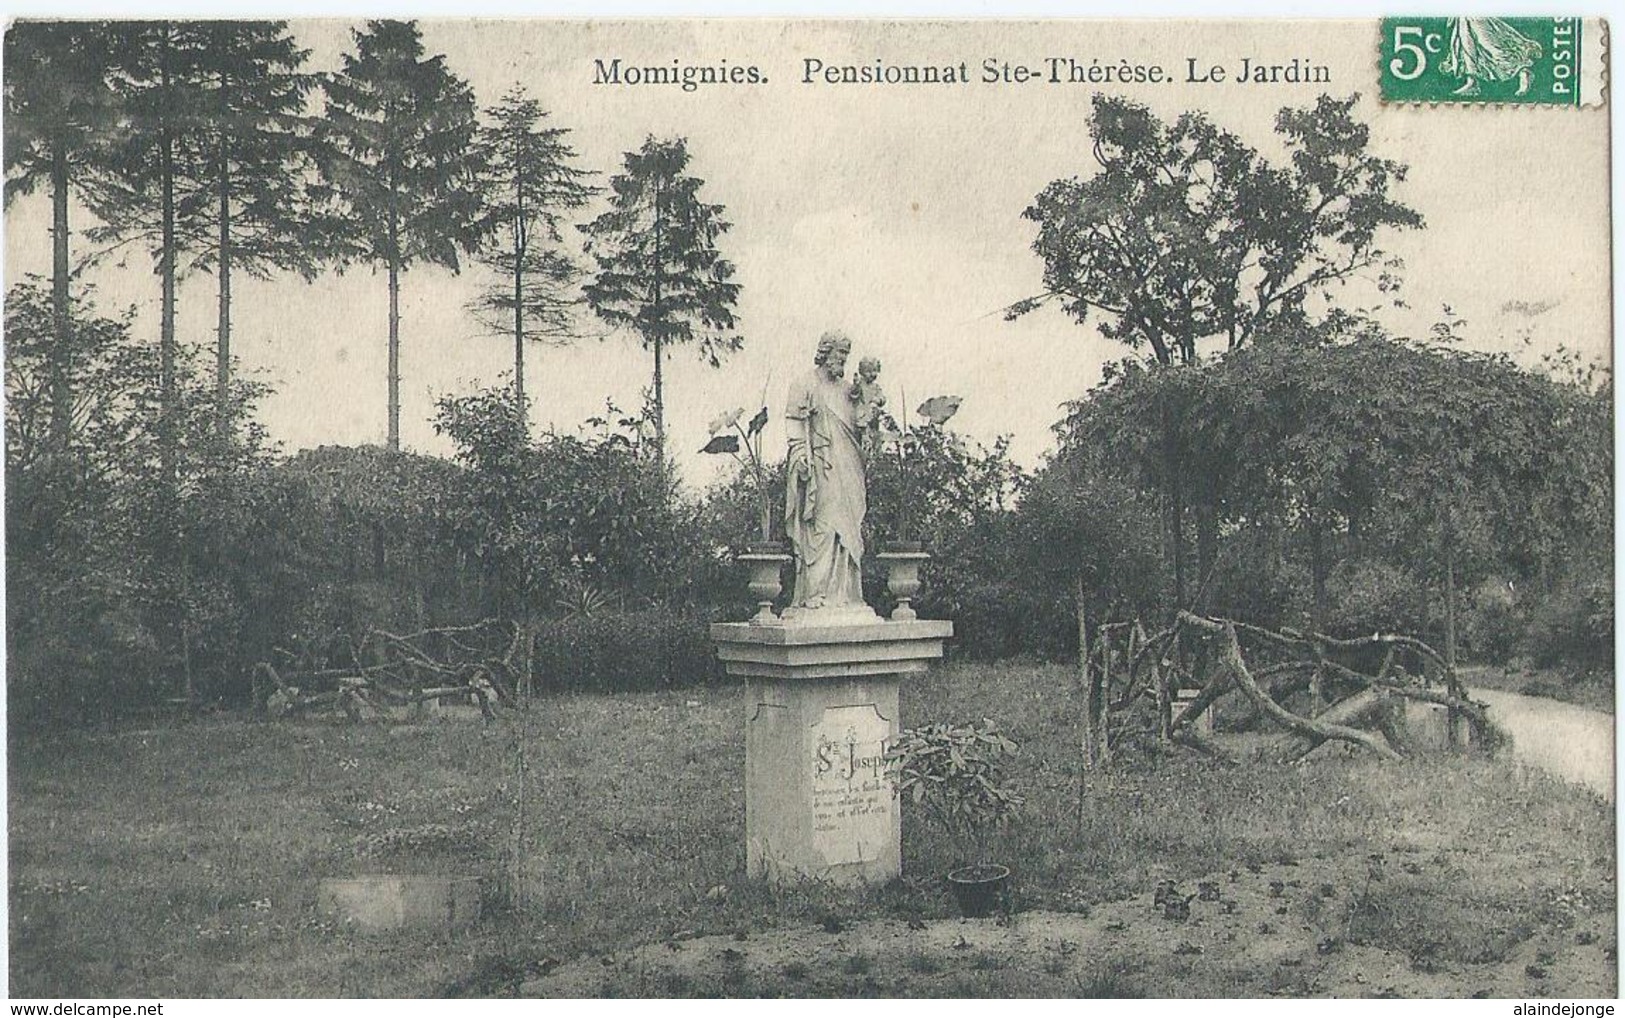 Momignies - Pensionnat Ste-Thérèse - Le Jardin - Edit. E. Douniau - 1909 - Bassenge